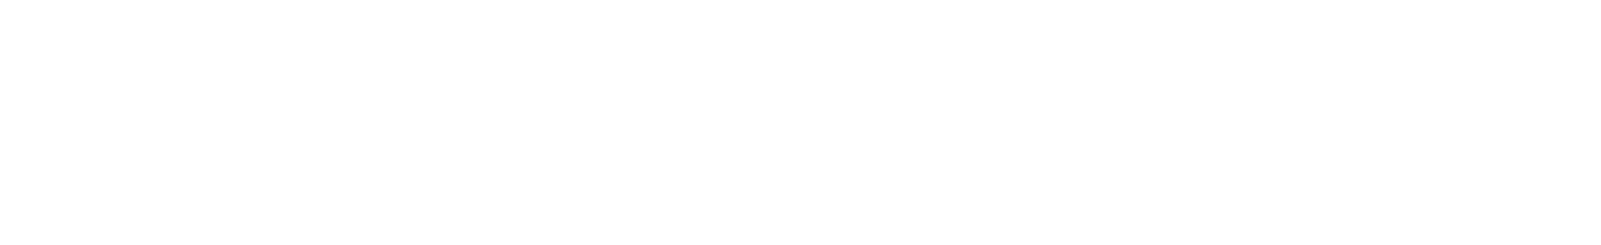 Panasonic logo grand pour les fonds sombres (PNG transparent)